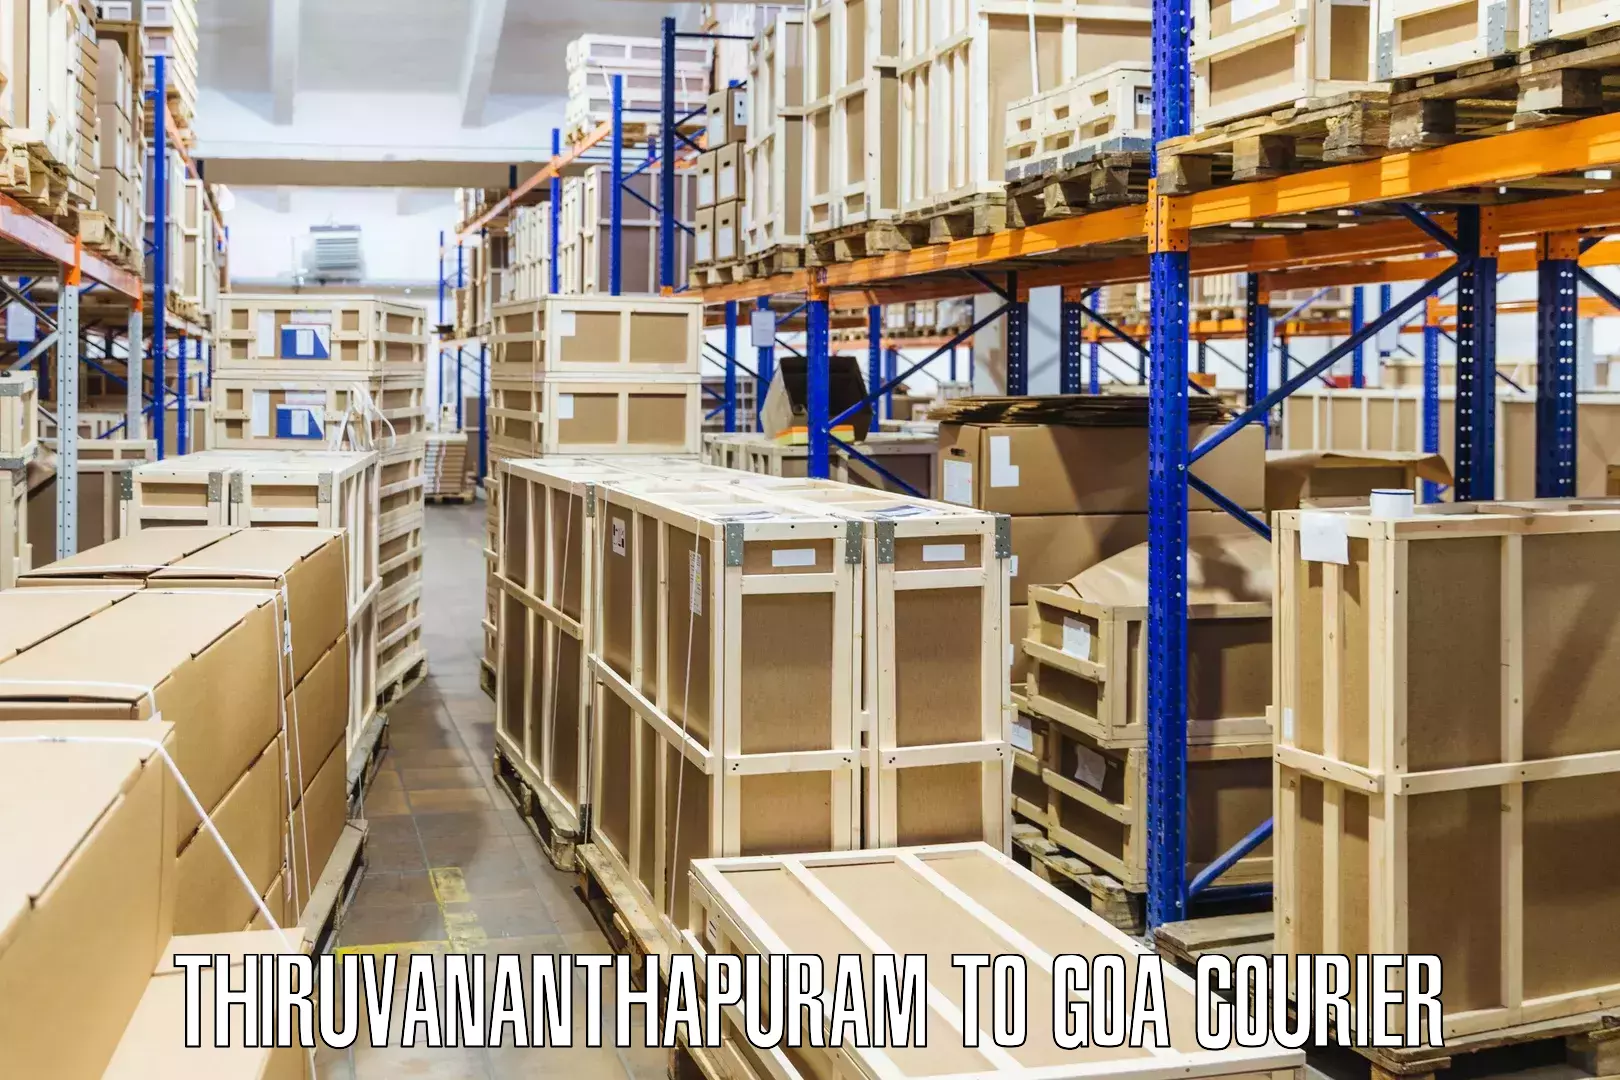 24-hour courier service Thiruvananthapuram to Goa University